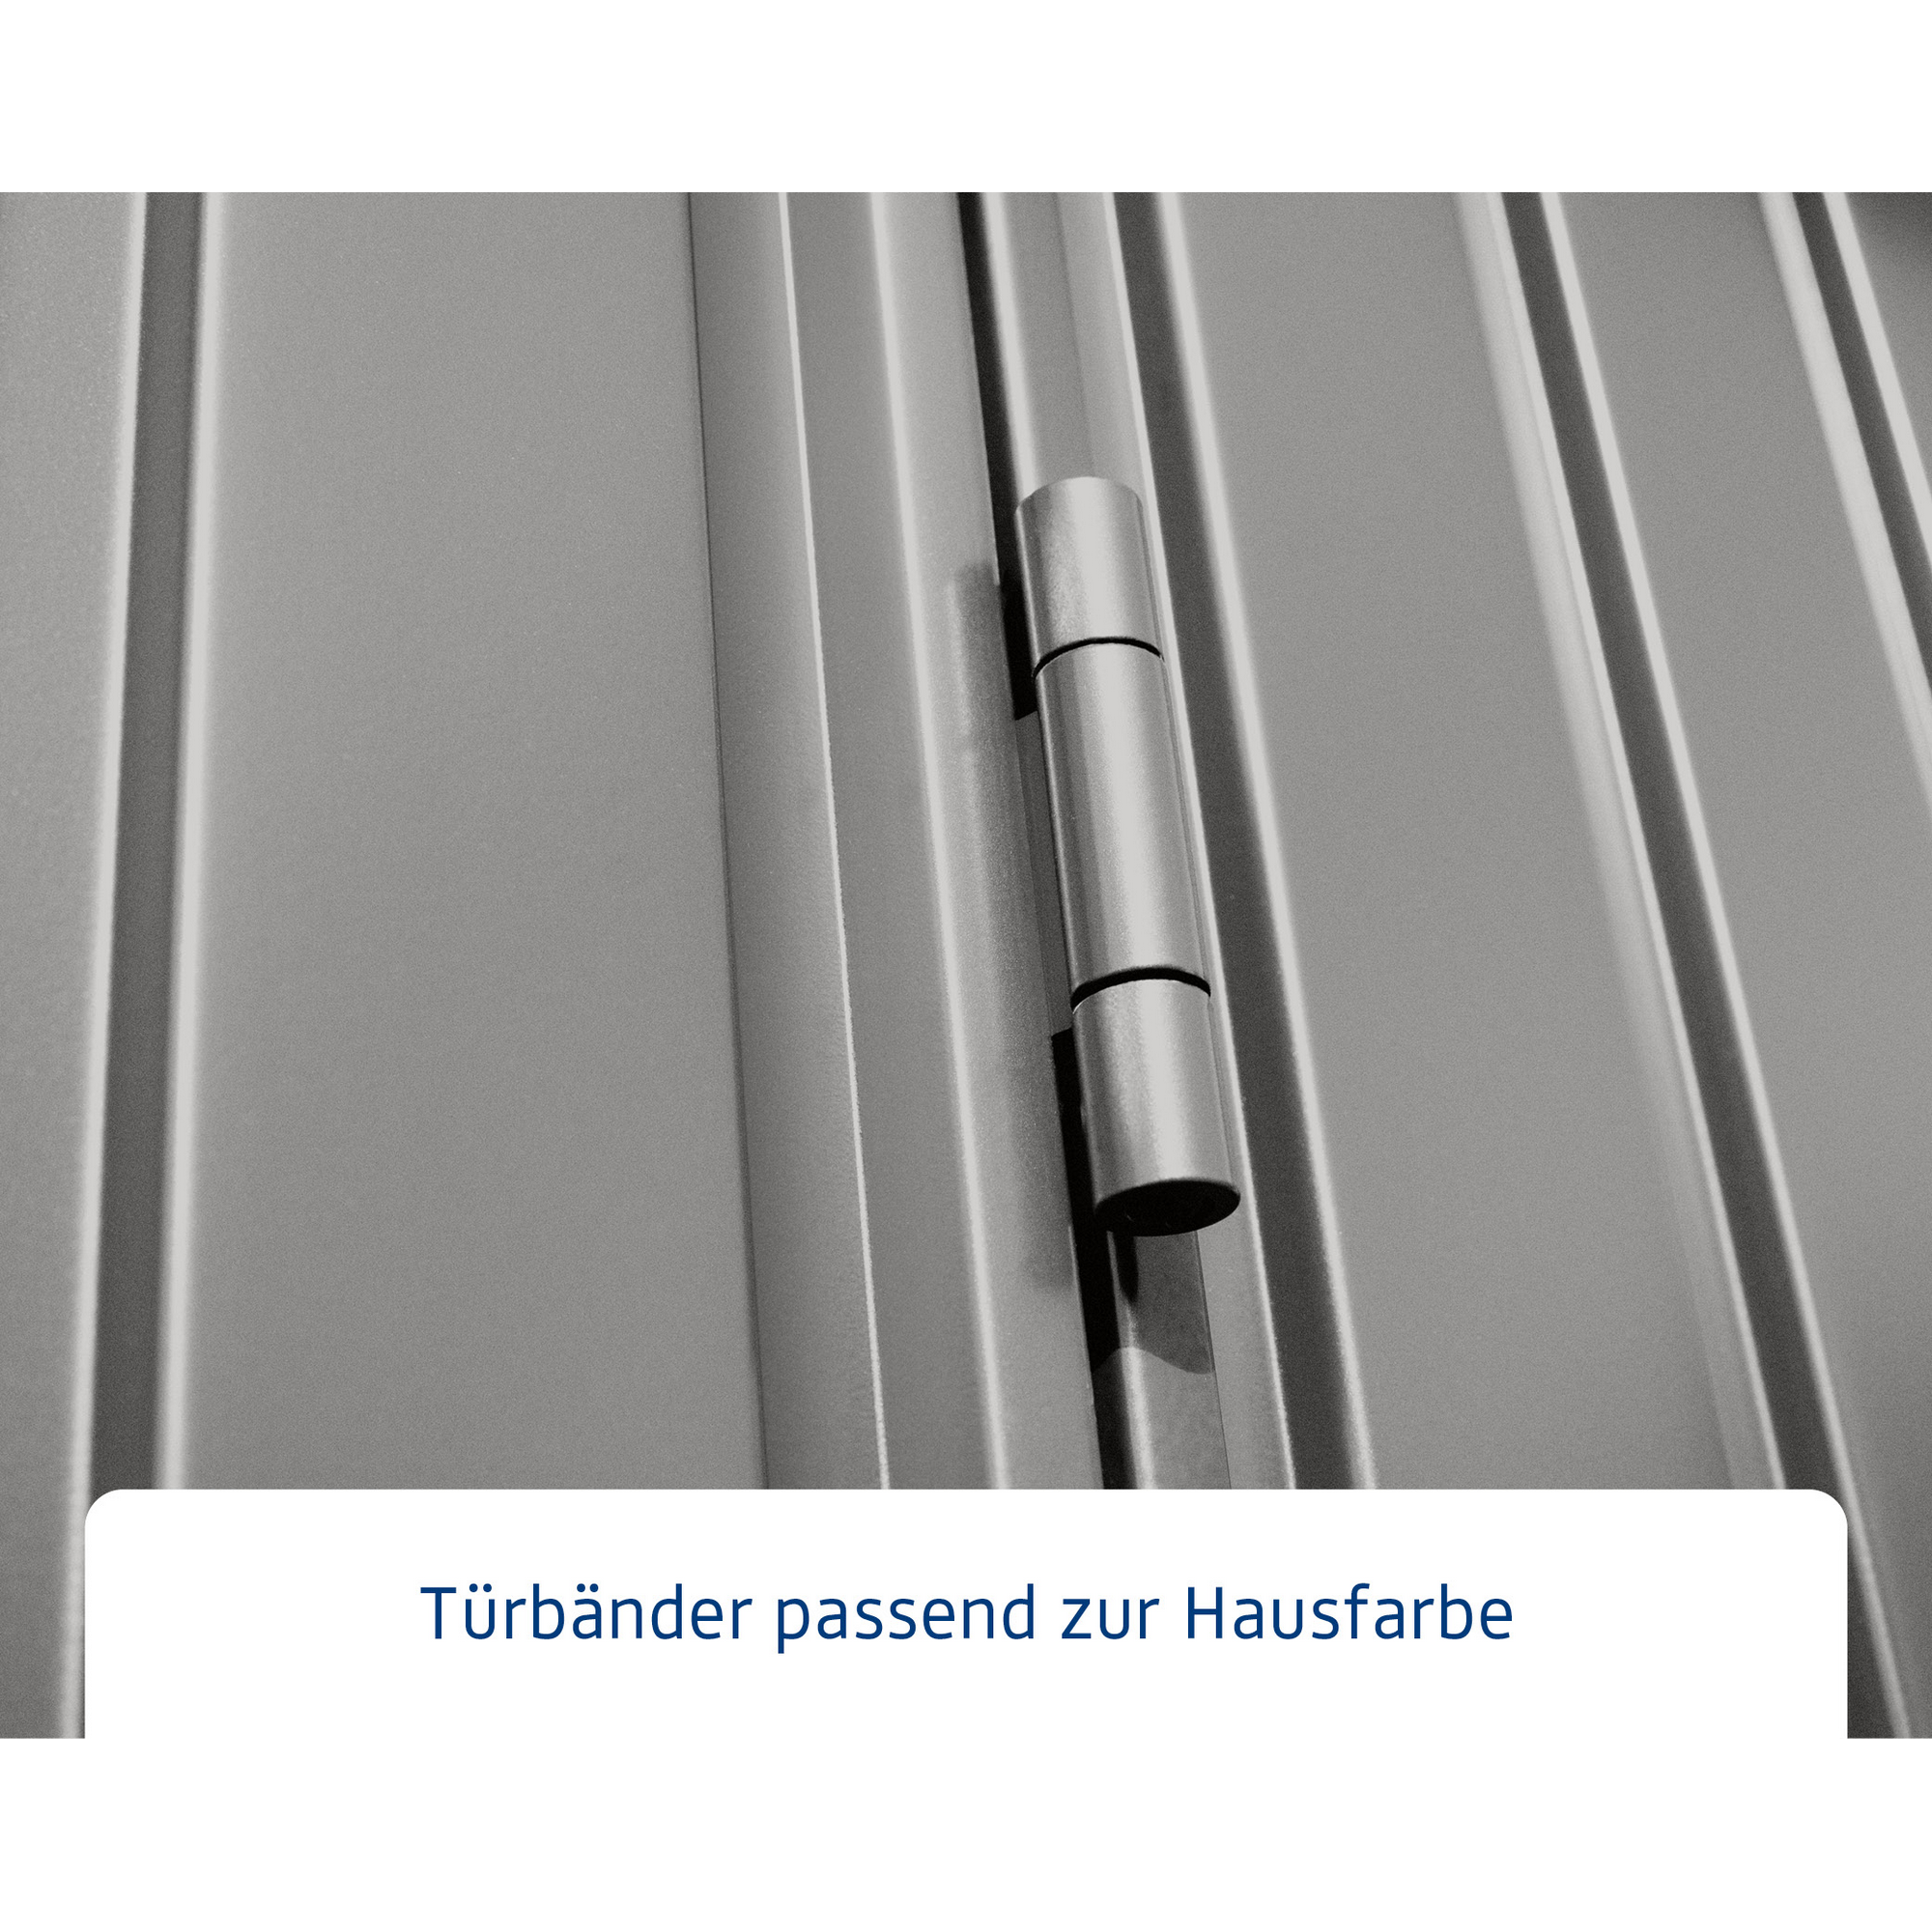 Gerätehaus 'Trend-P Typ 2' graualuminium 238 x 238 cm, mit Einzeltür + product picture